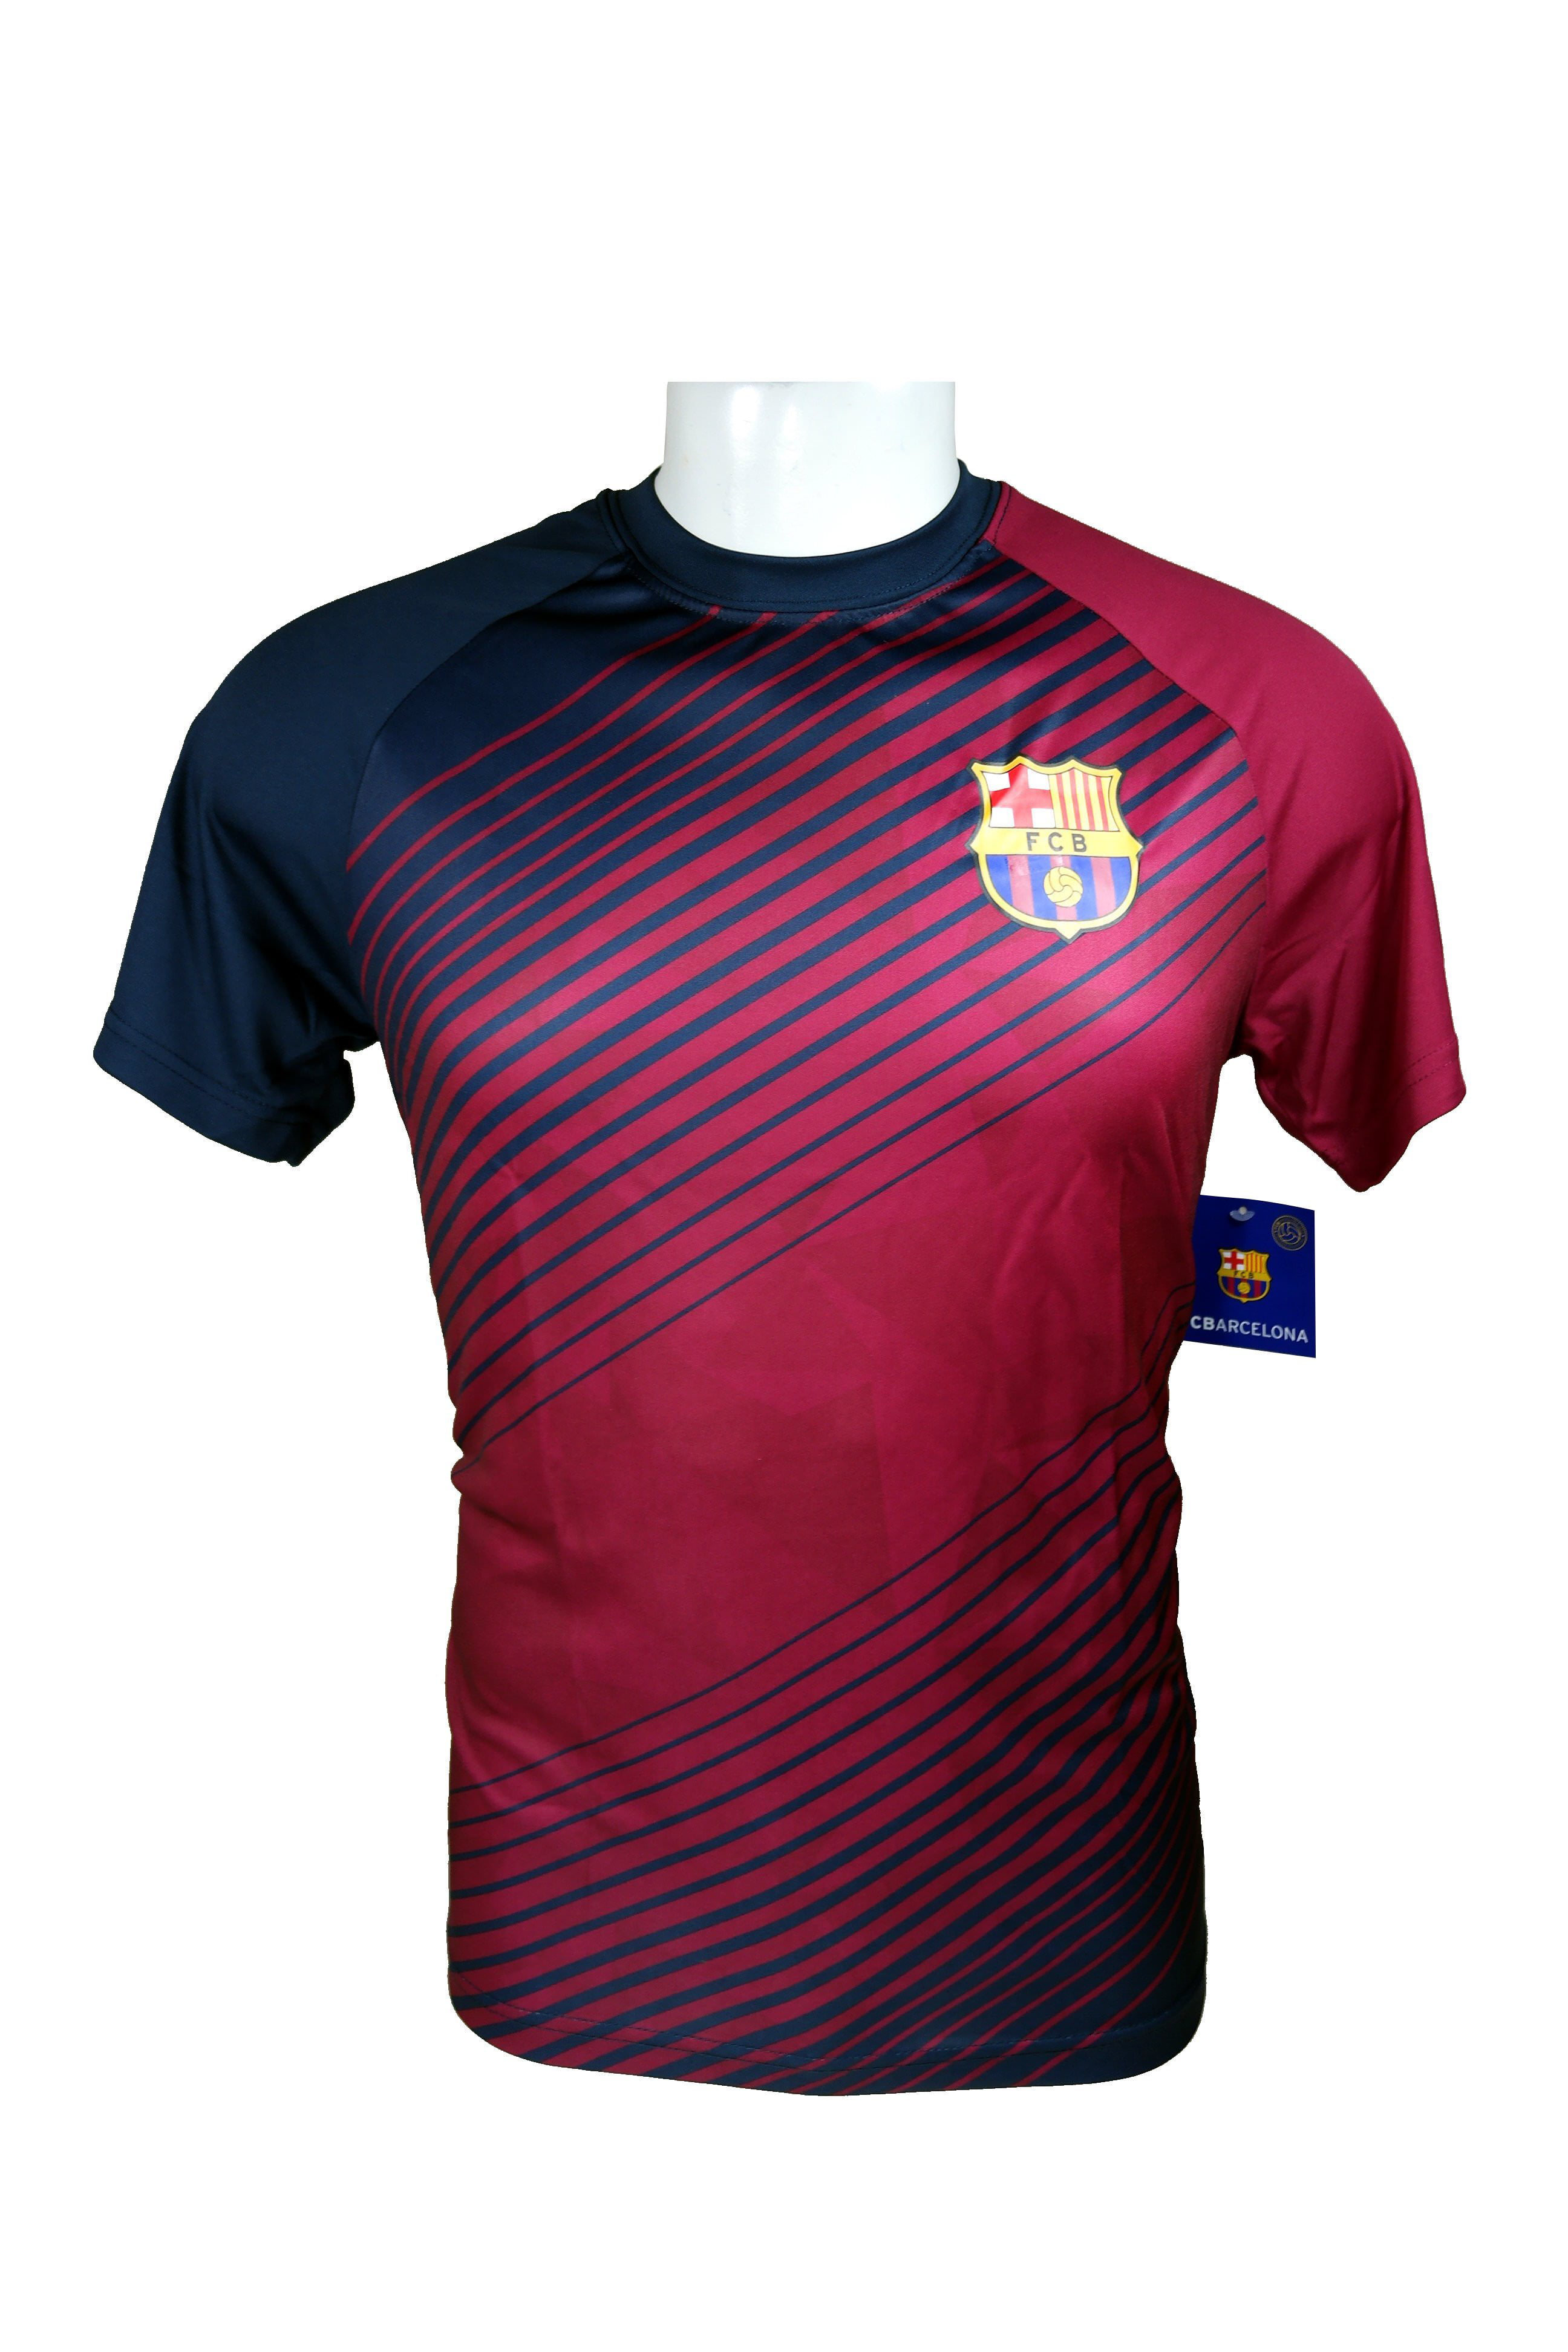 Barcelona Jersey HKY FC Barcelona Official Jersey 022 T-Shirt 